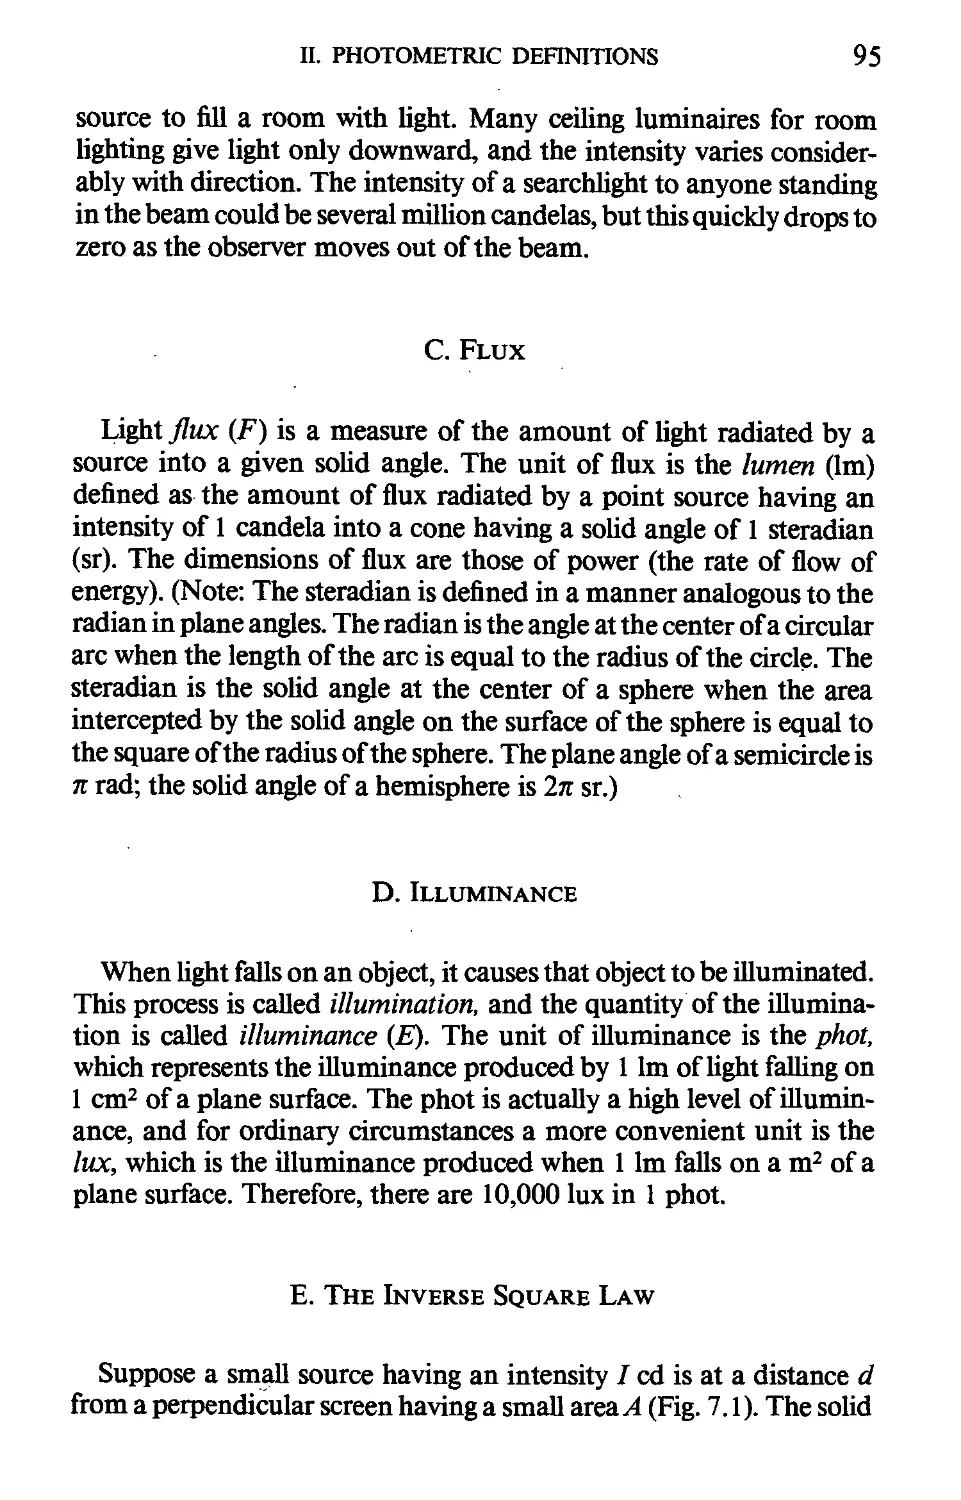 С. Flux
D. Illuminance
E. The Inverse Square Law